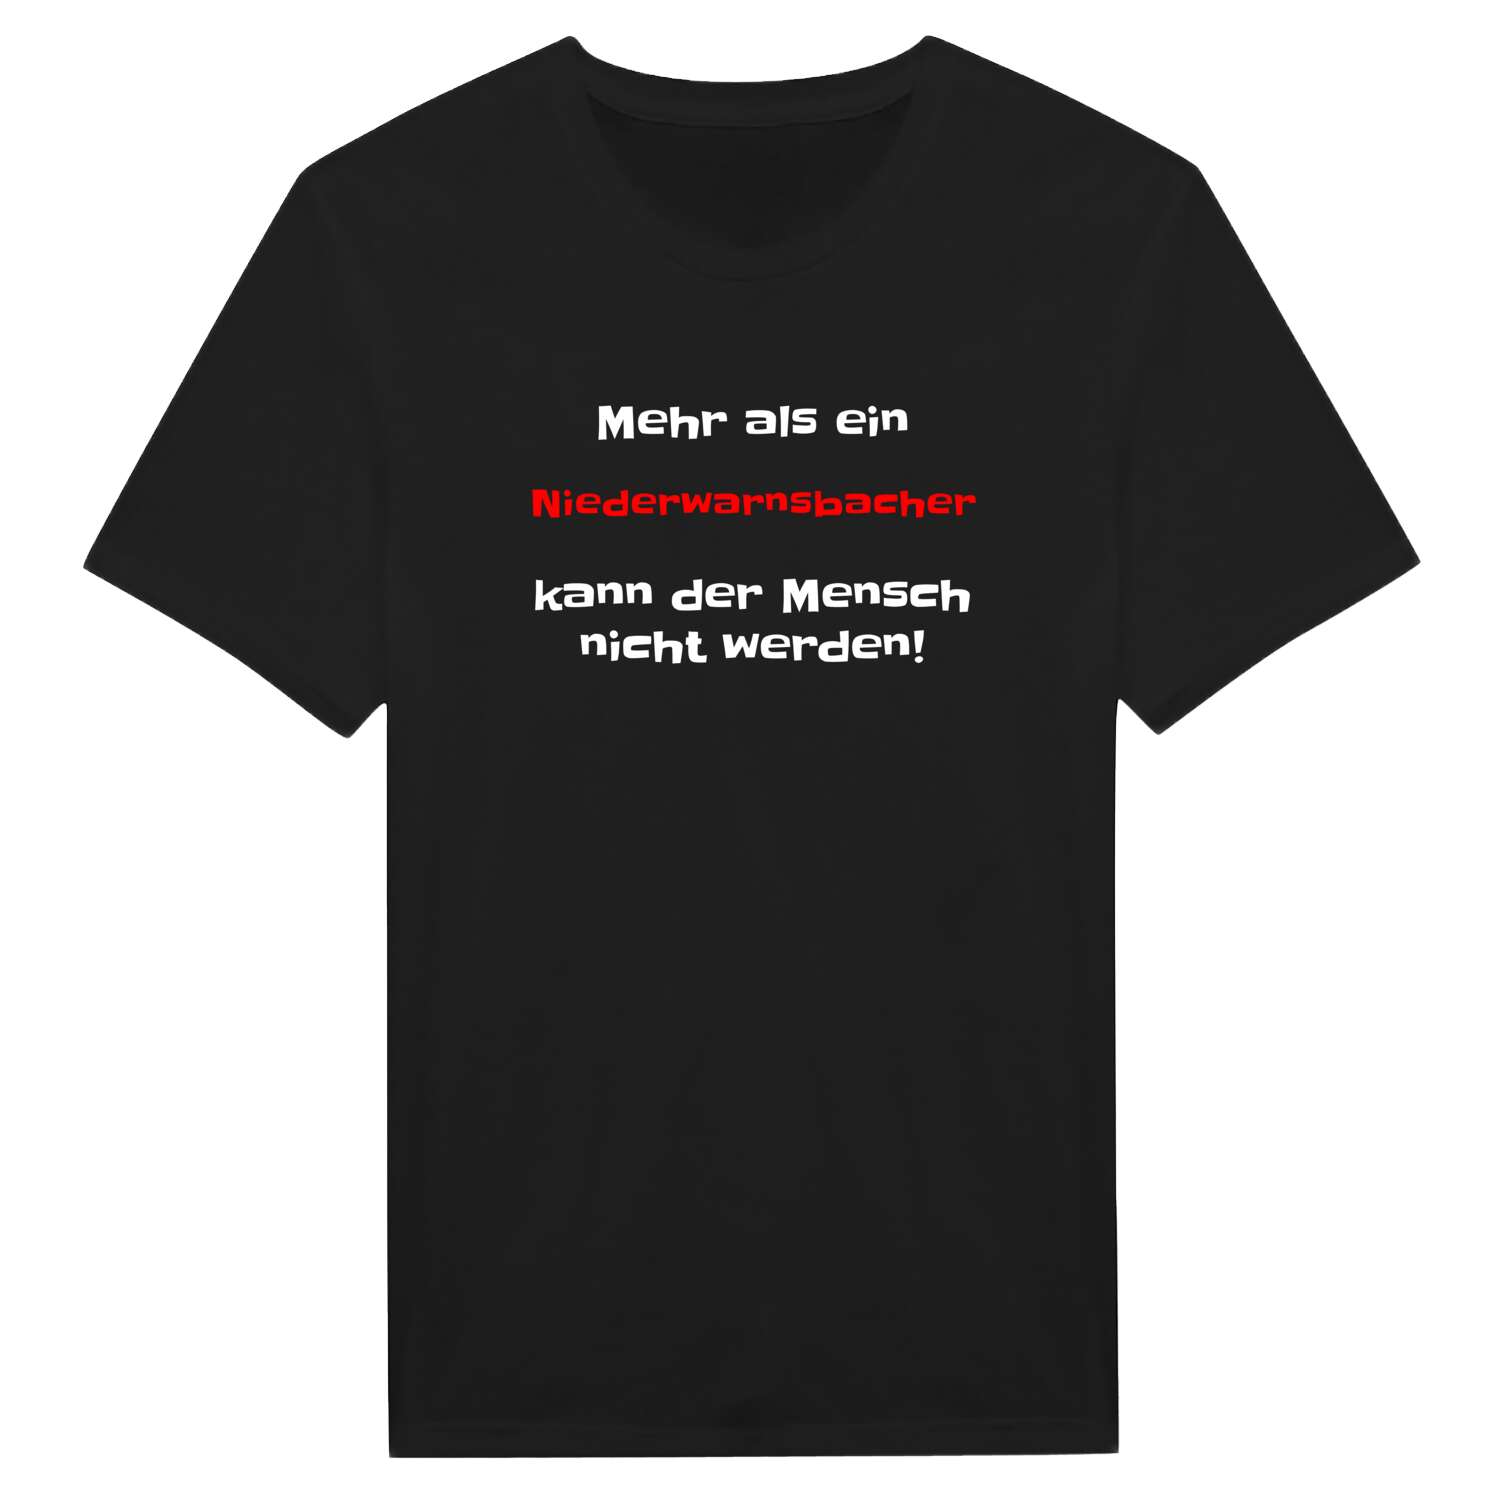 Niederwarnsbach T-Shirt »Mehr als ein«